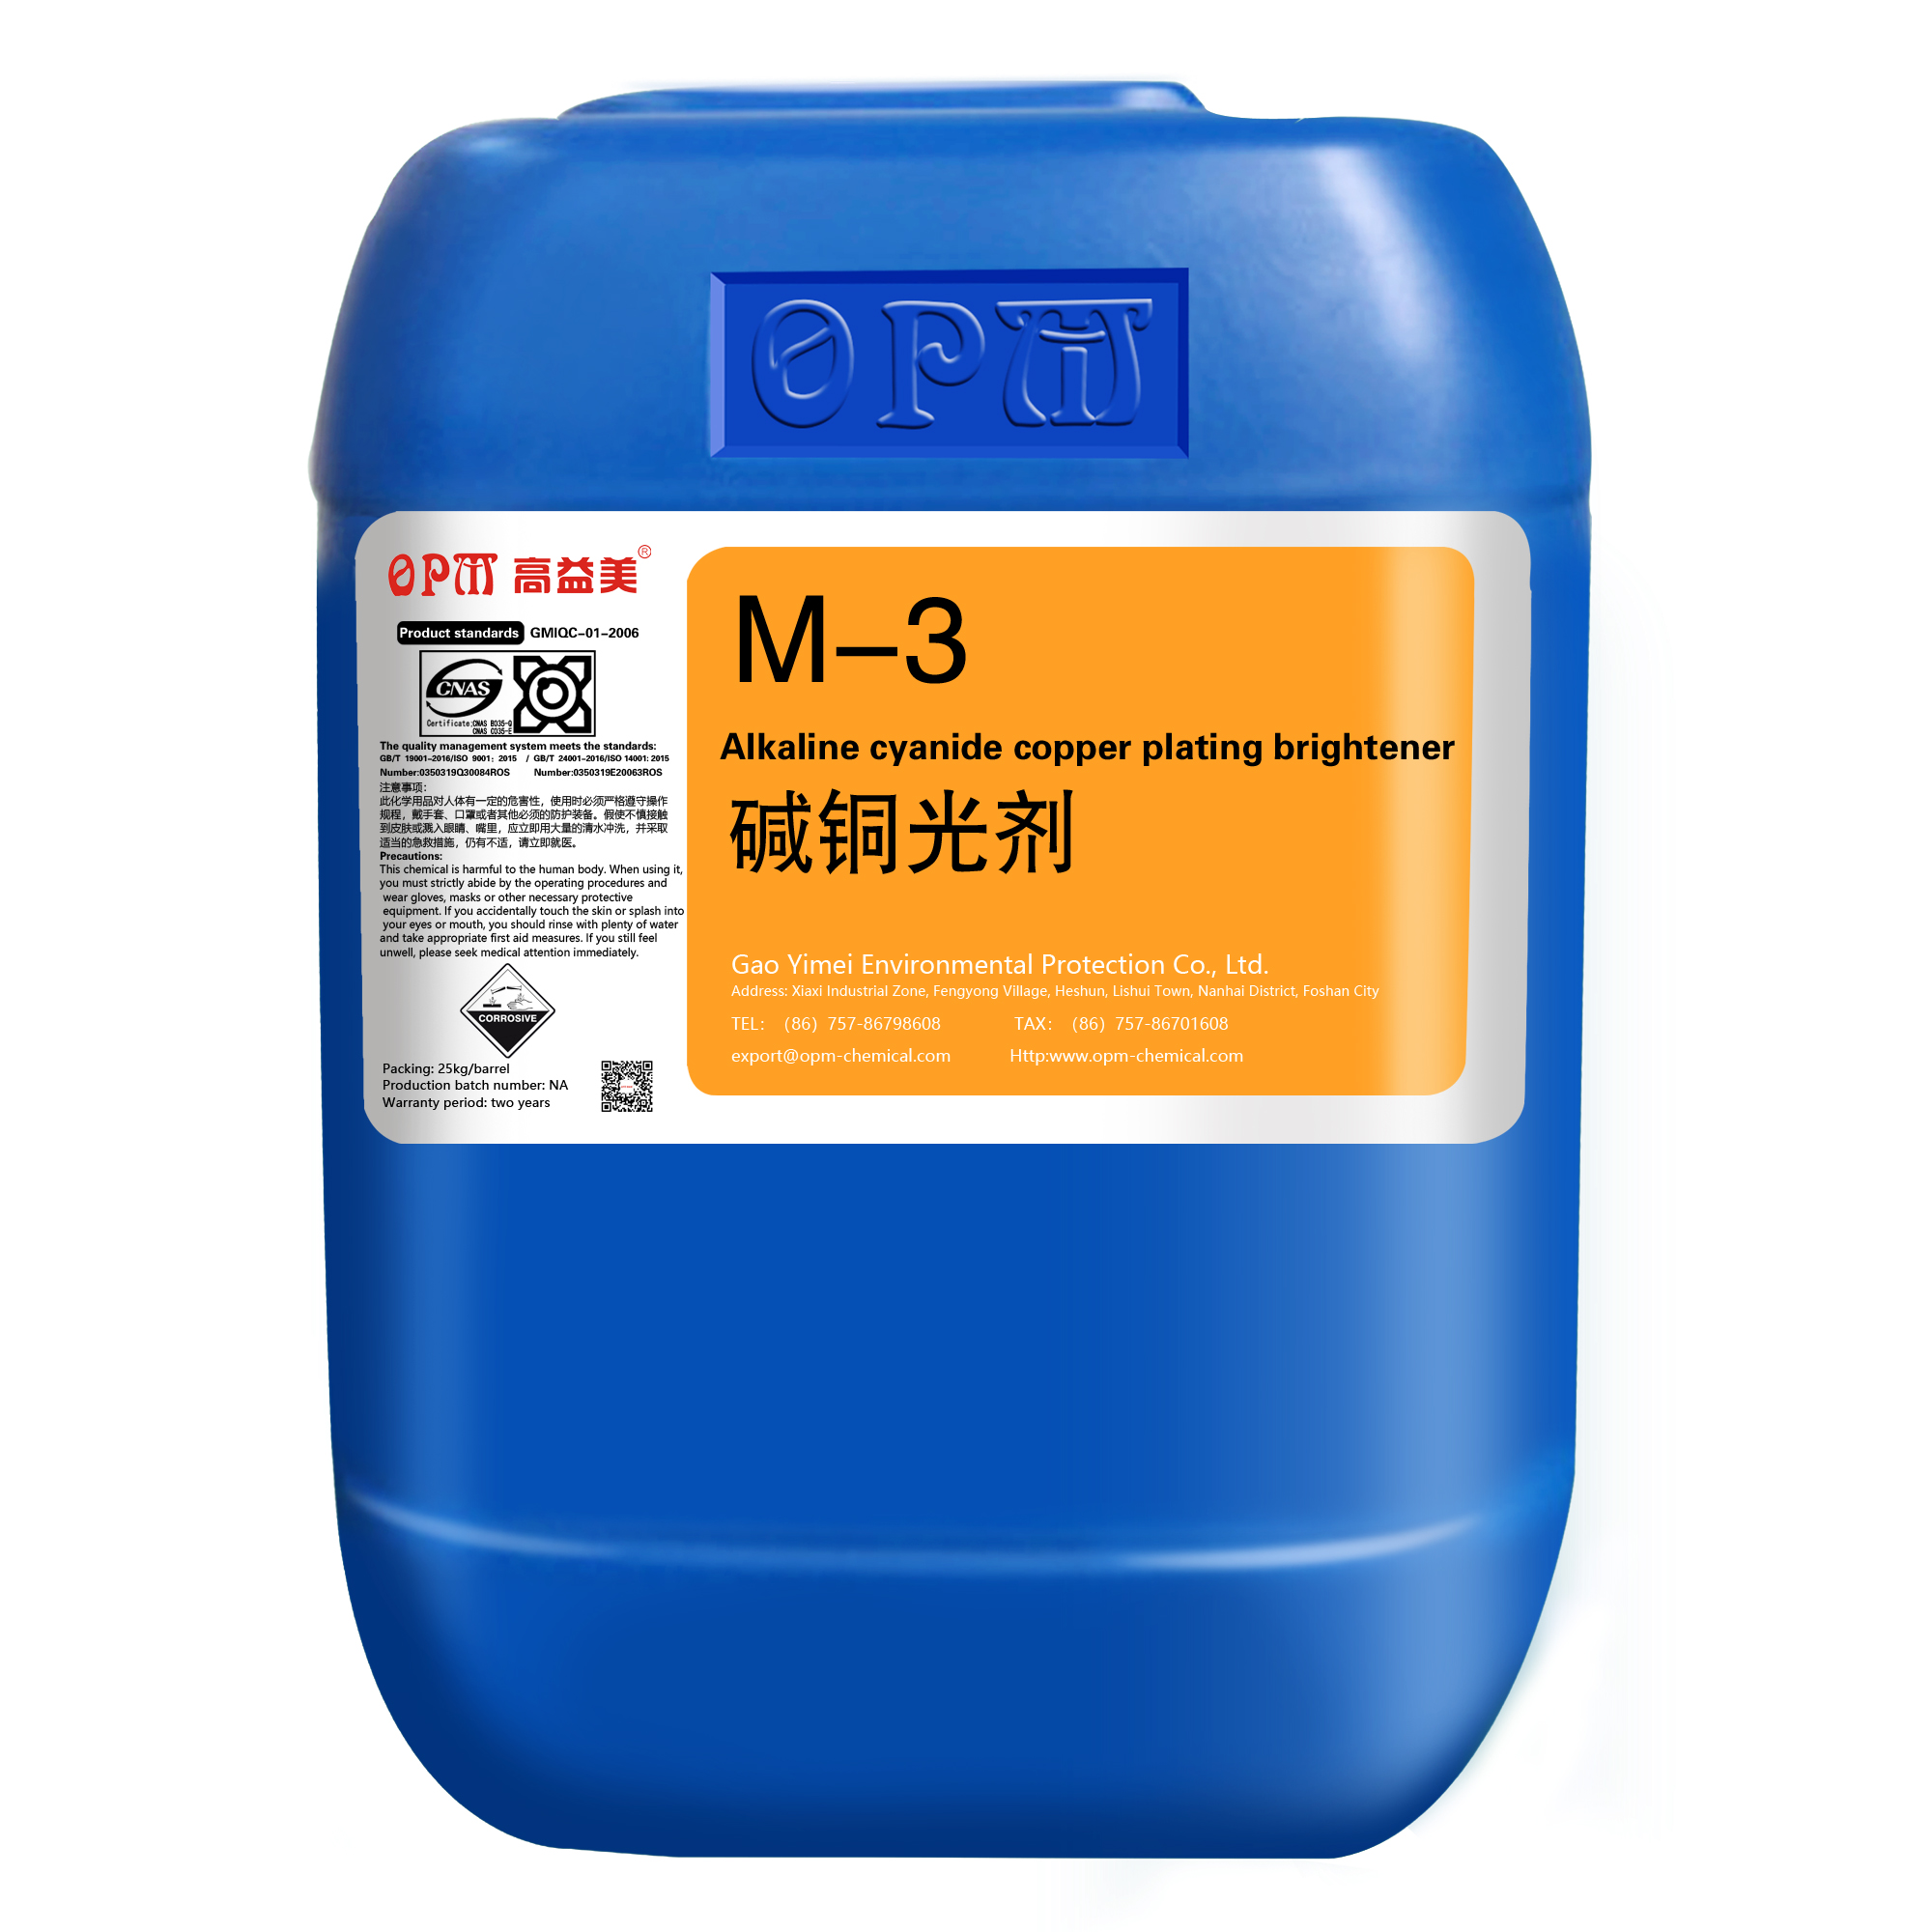 M-3/M-4Alkaline cyanide copper plating brightener